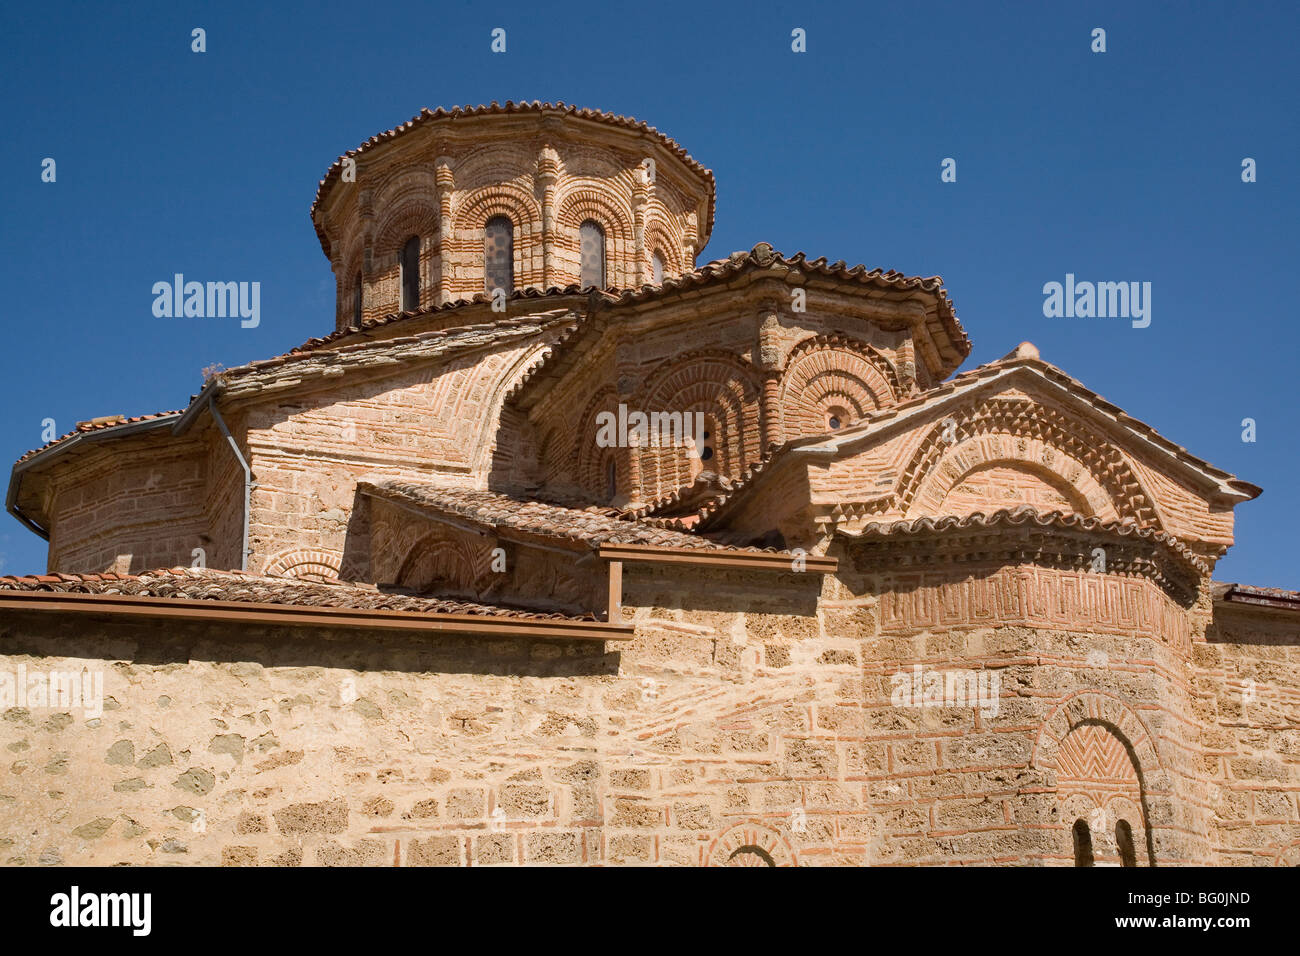 L'église, grand monastère des météores, Météores, UNESCO World Heritage Site, Thessalie, Grèce, Europe Banque D'Images